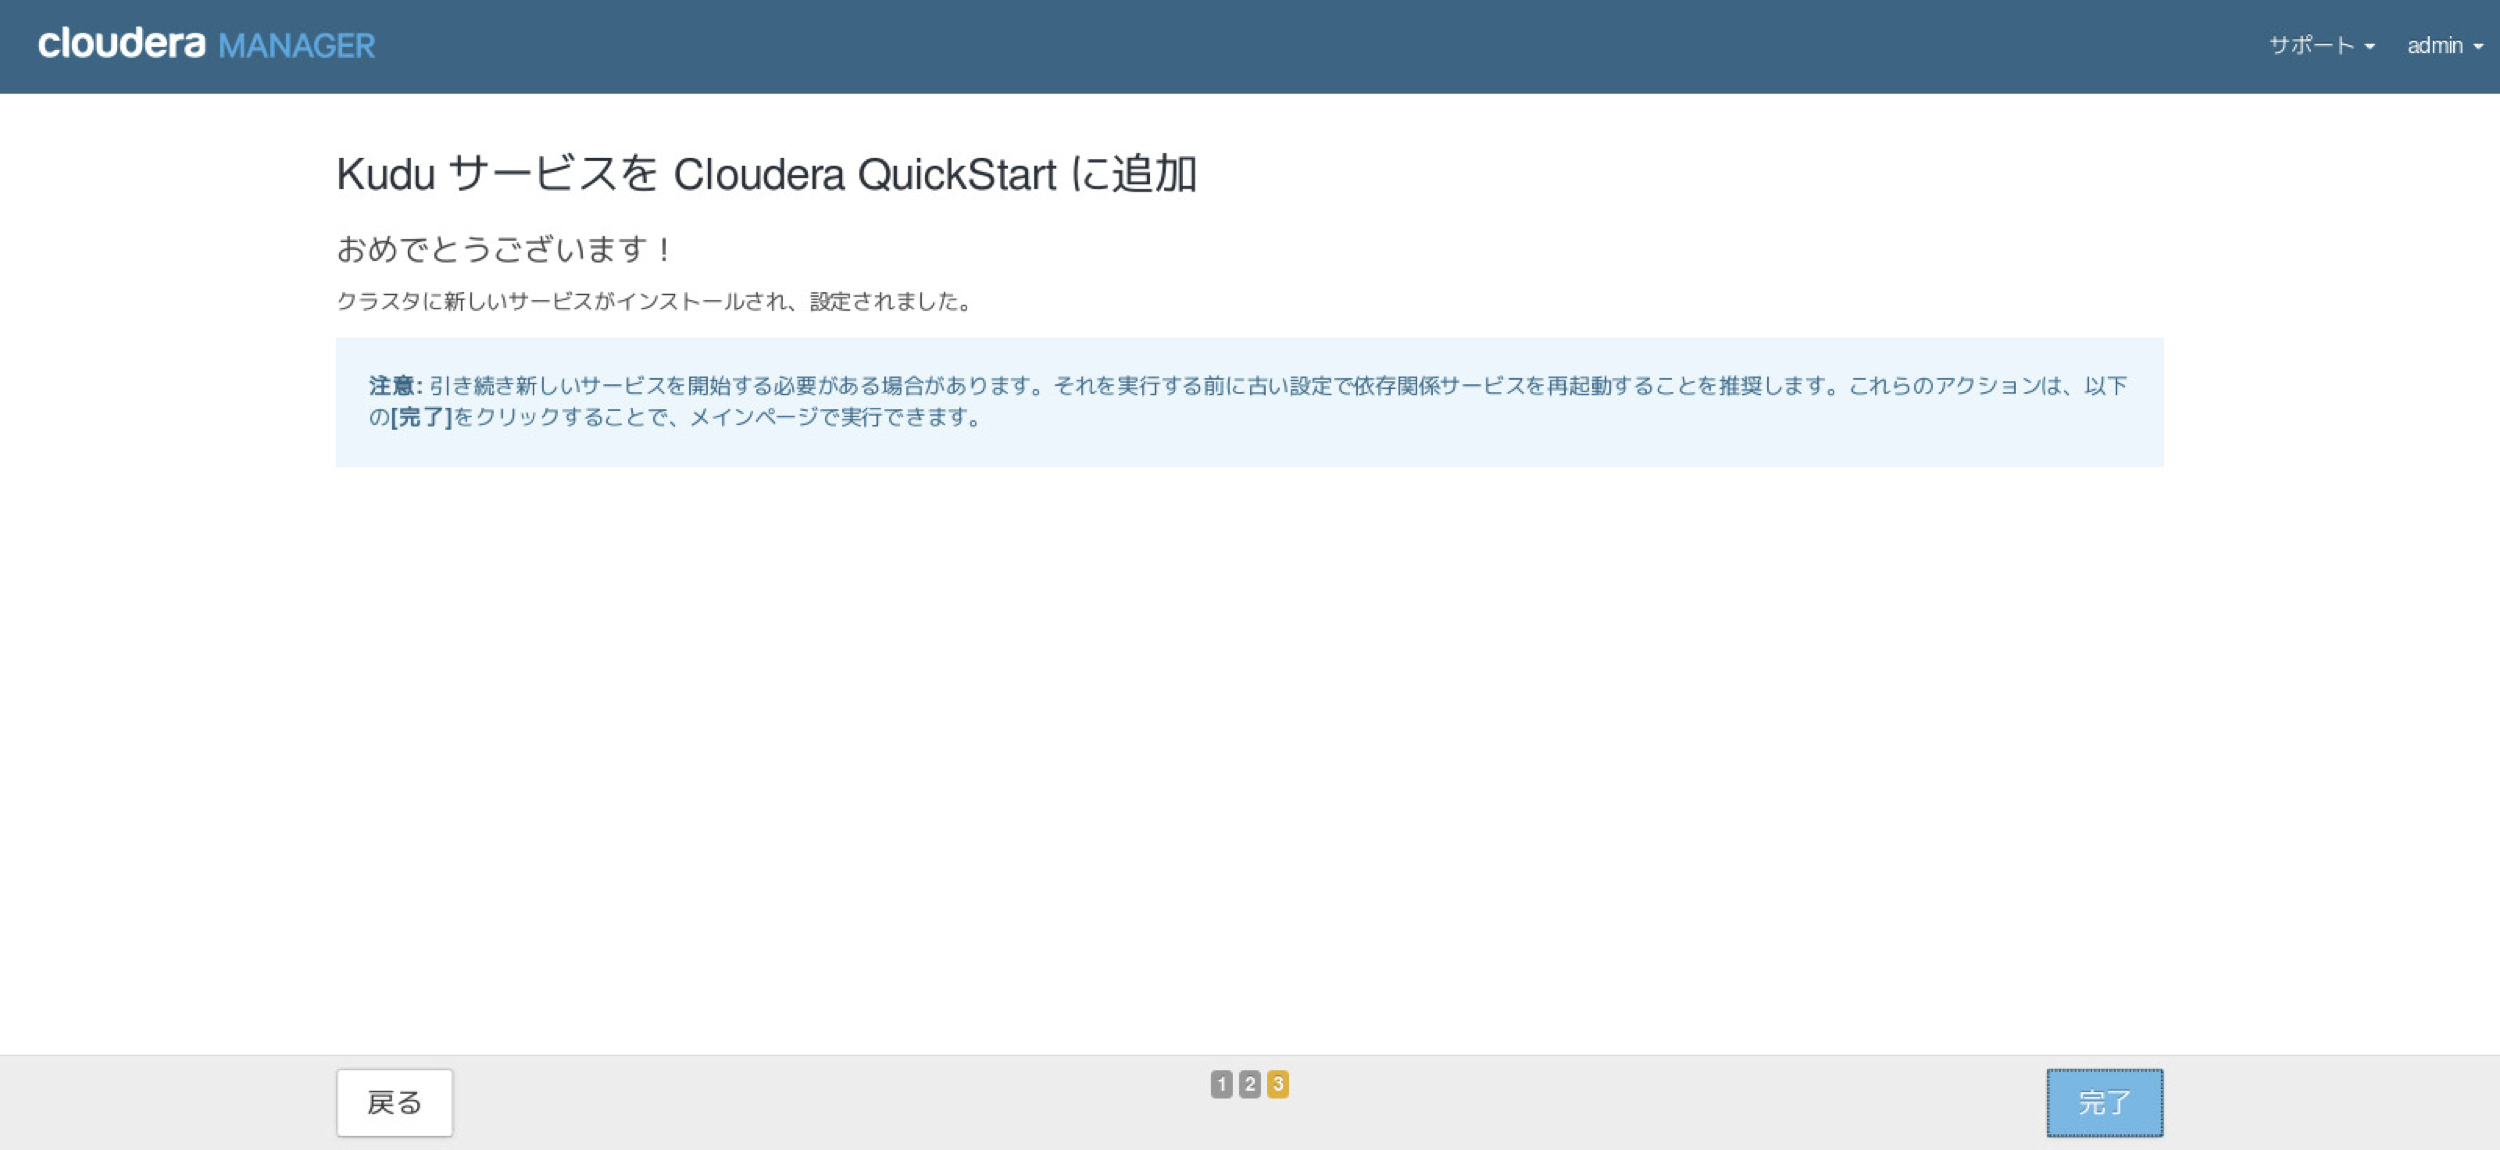 FireShot Capture 025 - Kudu サービスを Clo__ - http___quickstart.cloudera_7180_cm.png